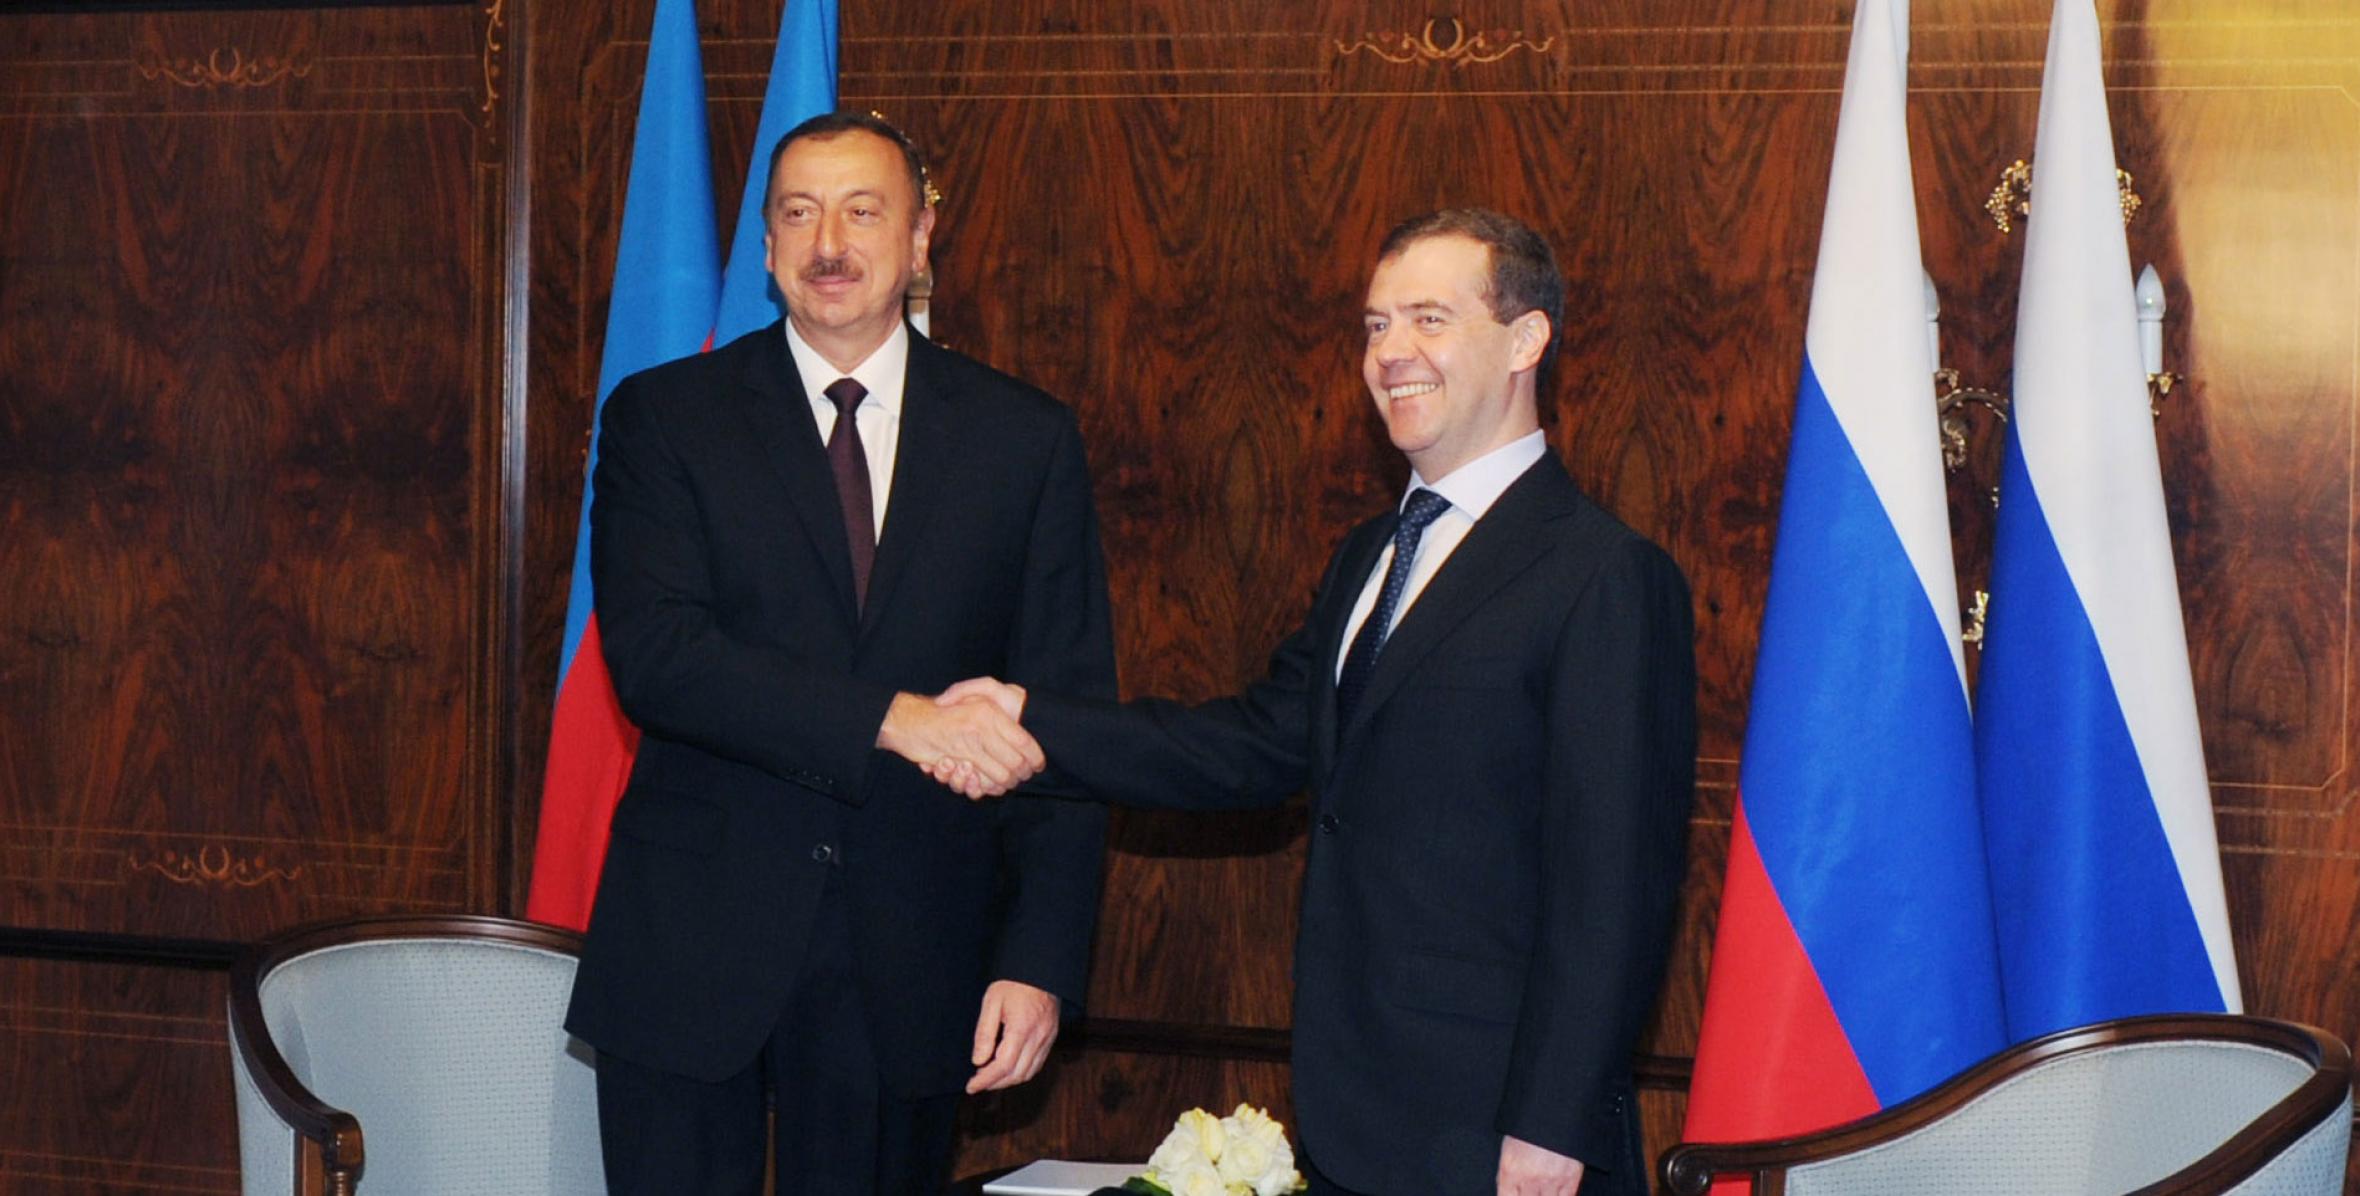 İlham Əliyevin və Rusiya Prezidenti Dmitri Medvedevin görüşü olmuşdur